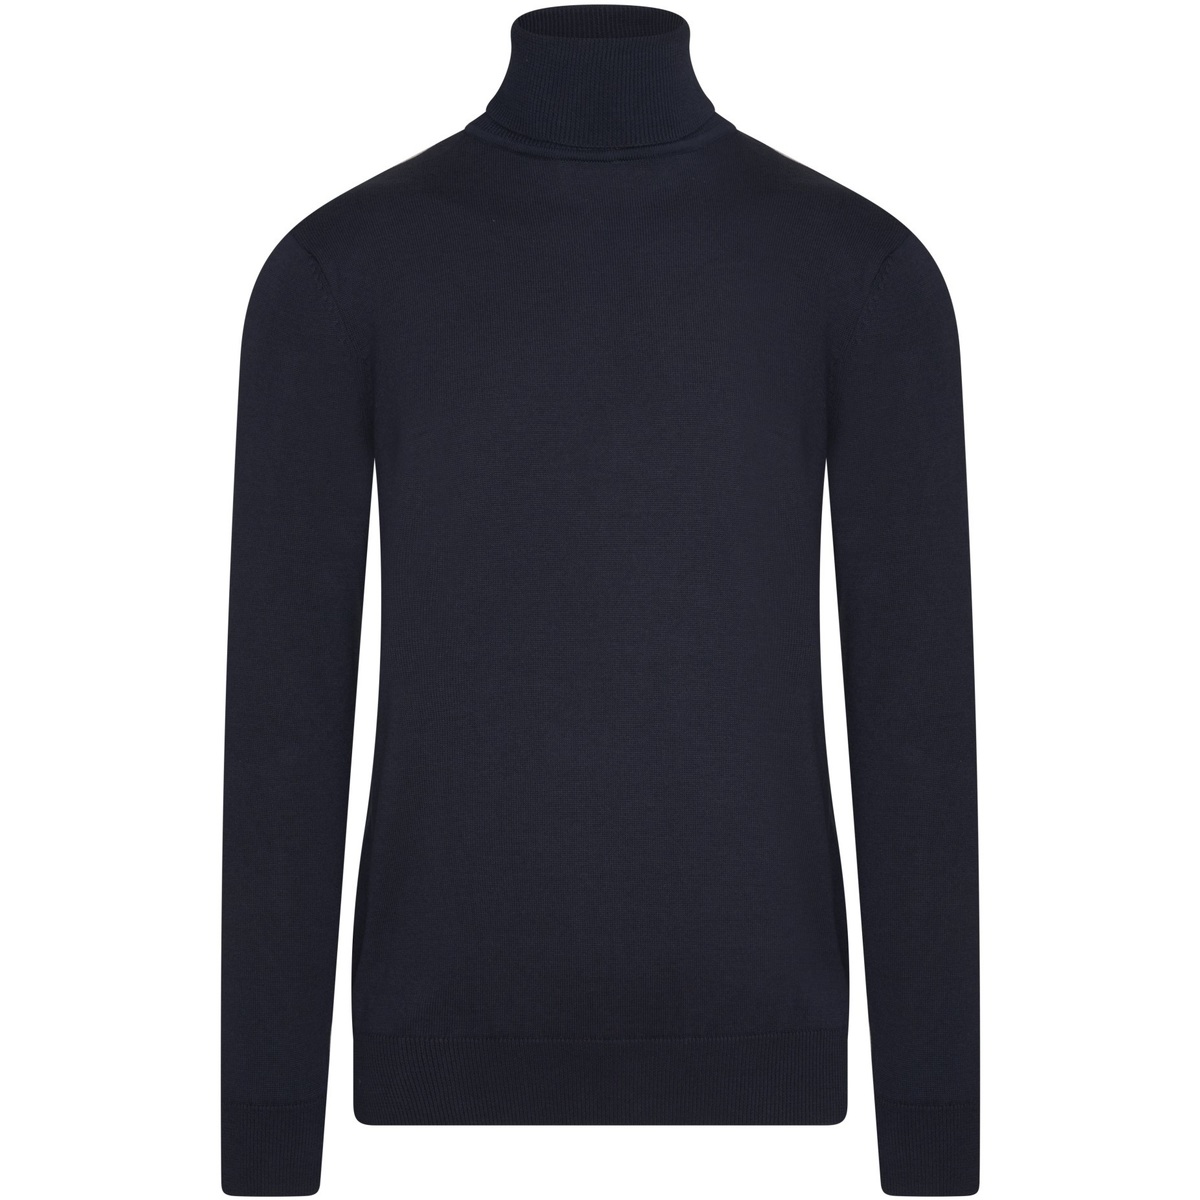 Textiel Heren Sweaters / Sweatshirts Cappuccino Italia Coltrui Navy Blauw